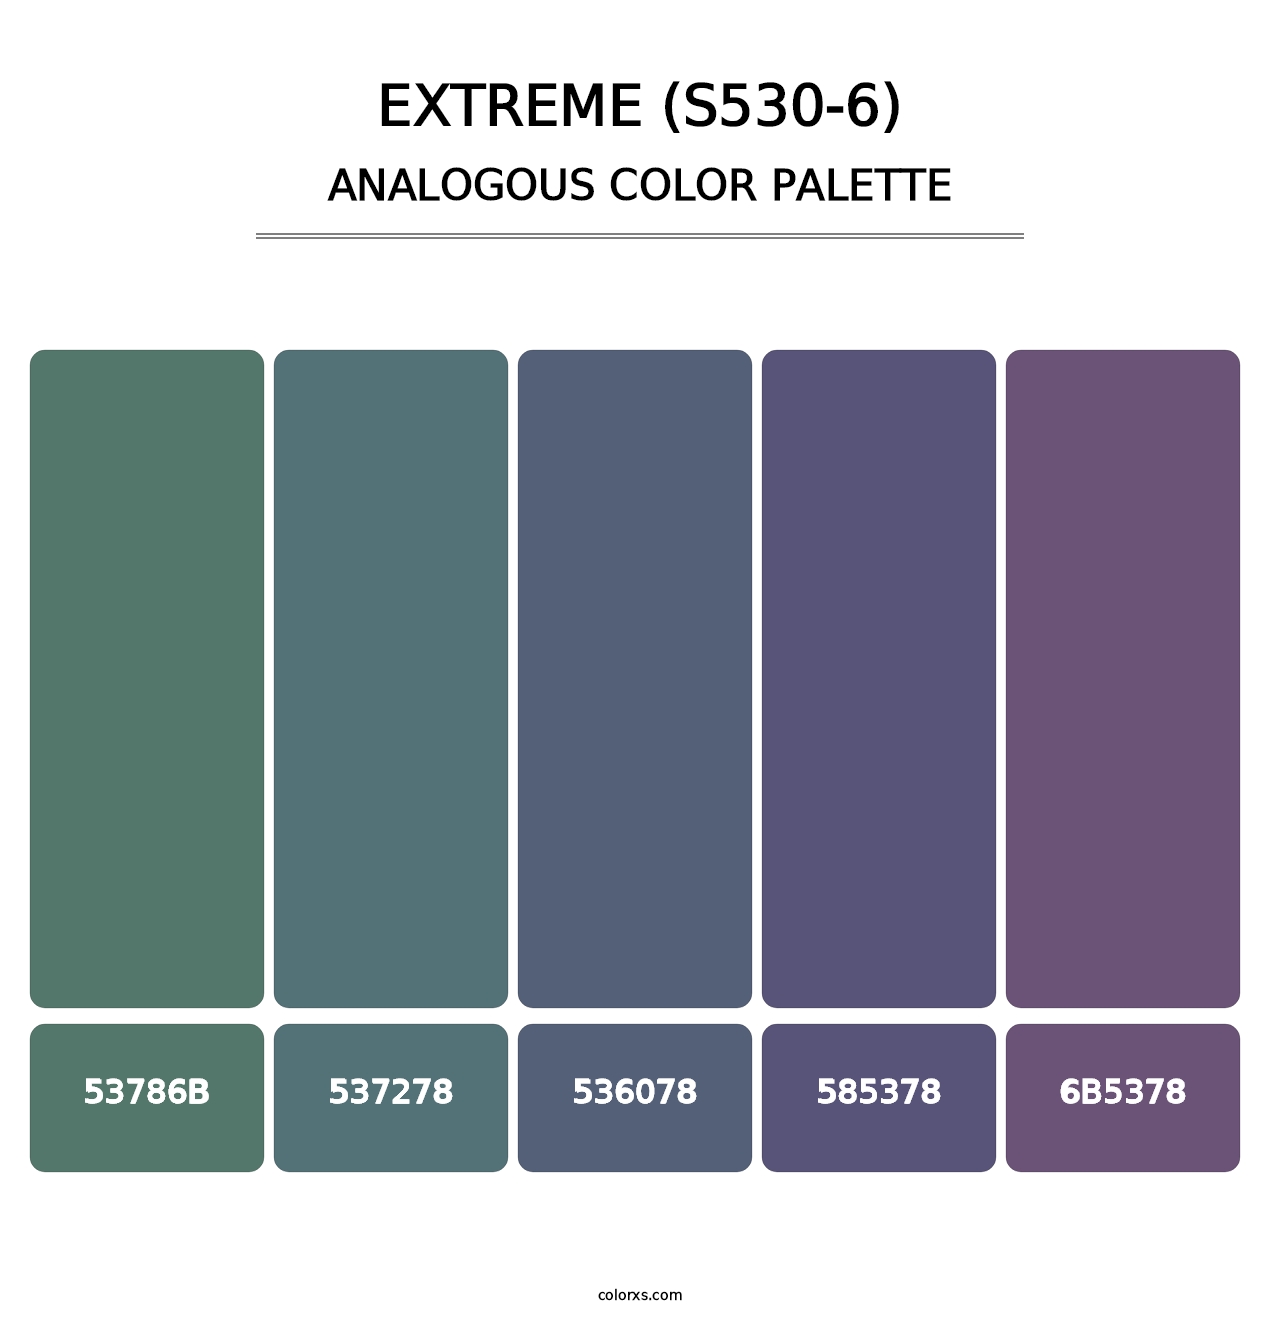 Extreme (S530-6) - Analogous Color Palette